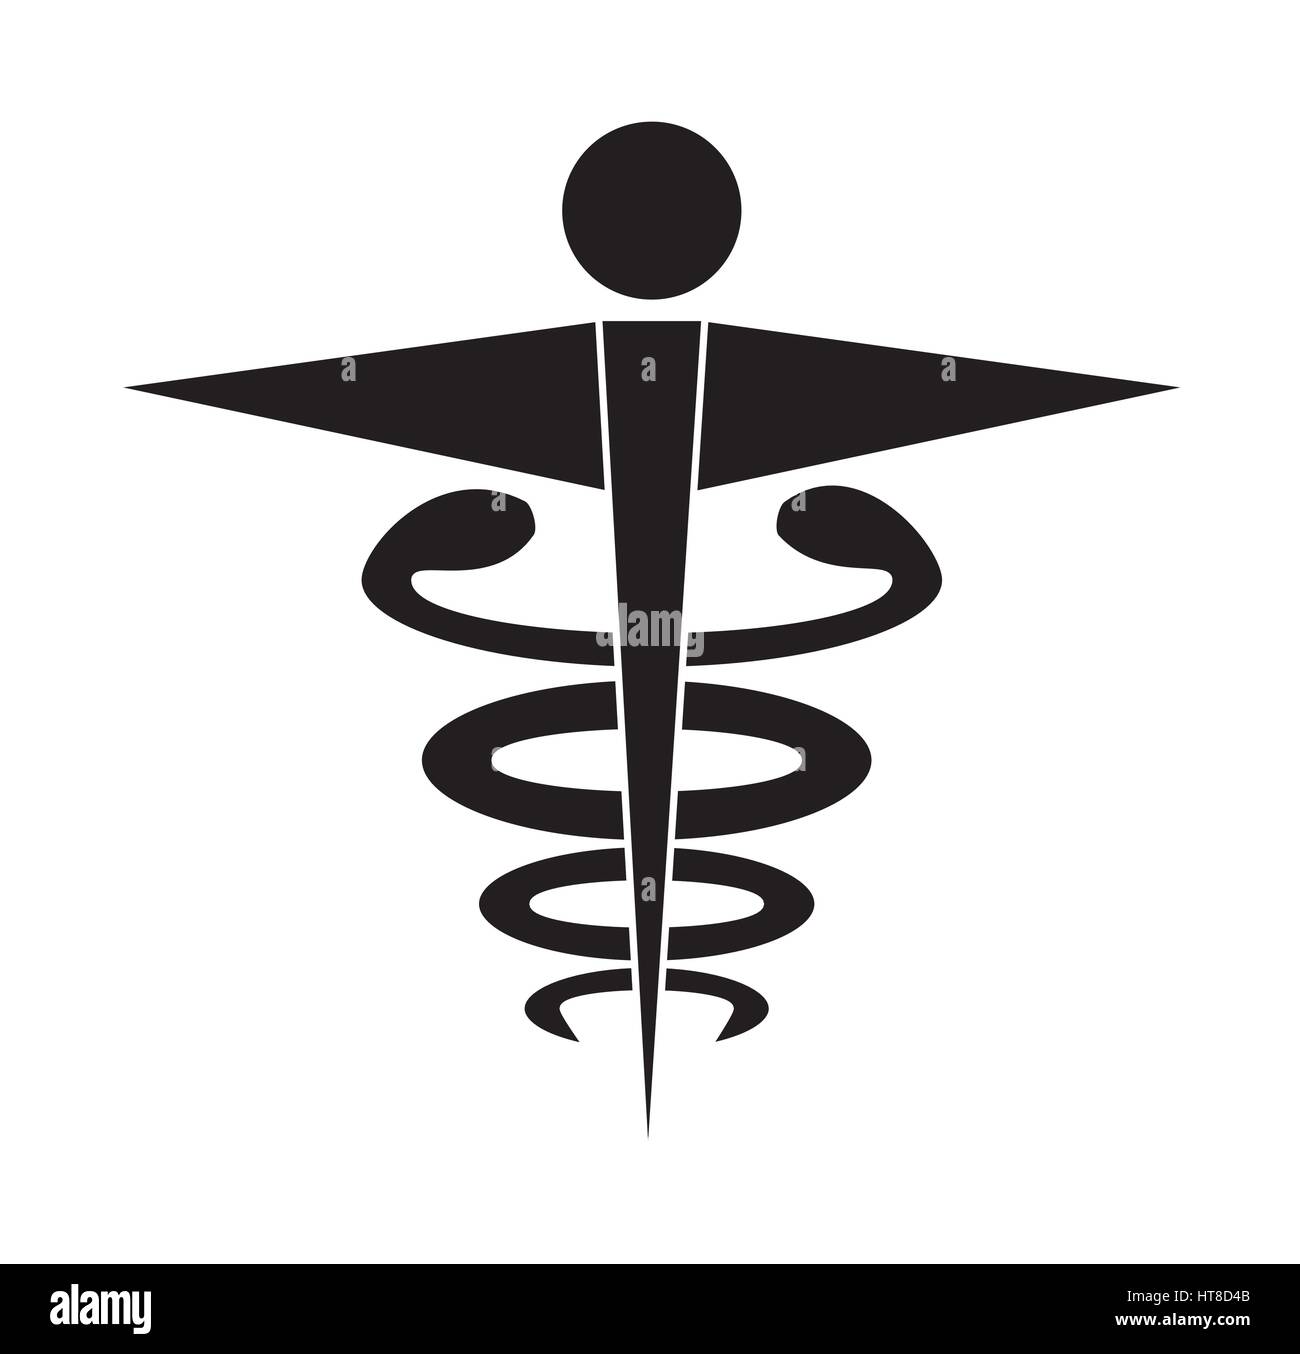 Bianco e nero caduceo medico icona simbolo vettore isolato sullo sfondo bianco. Icone di medici. Illustrazione Vettoriale